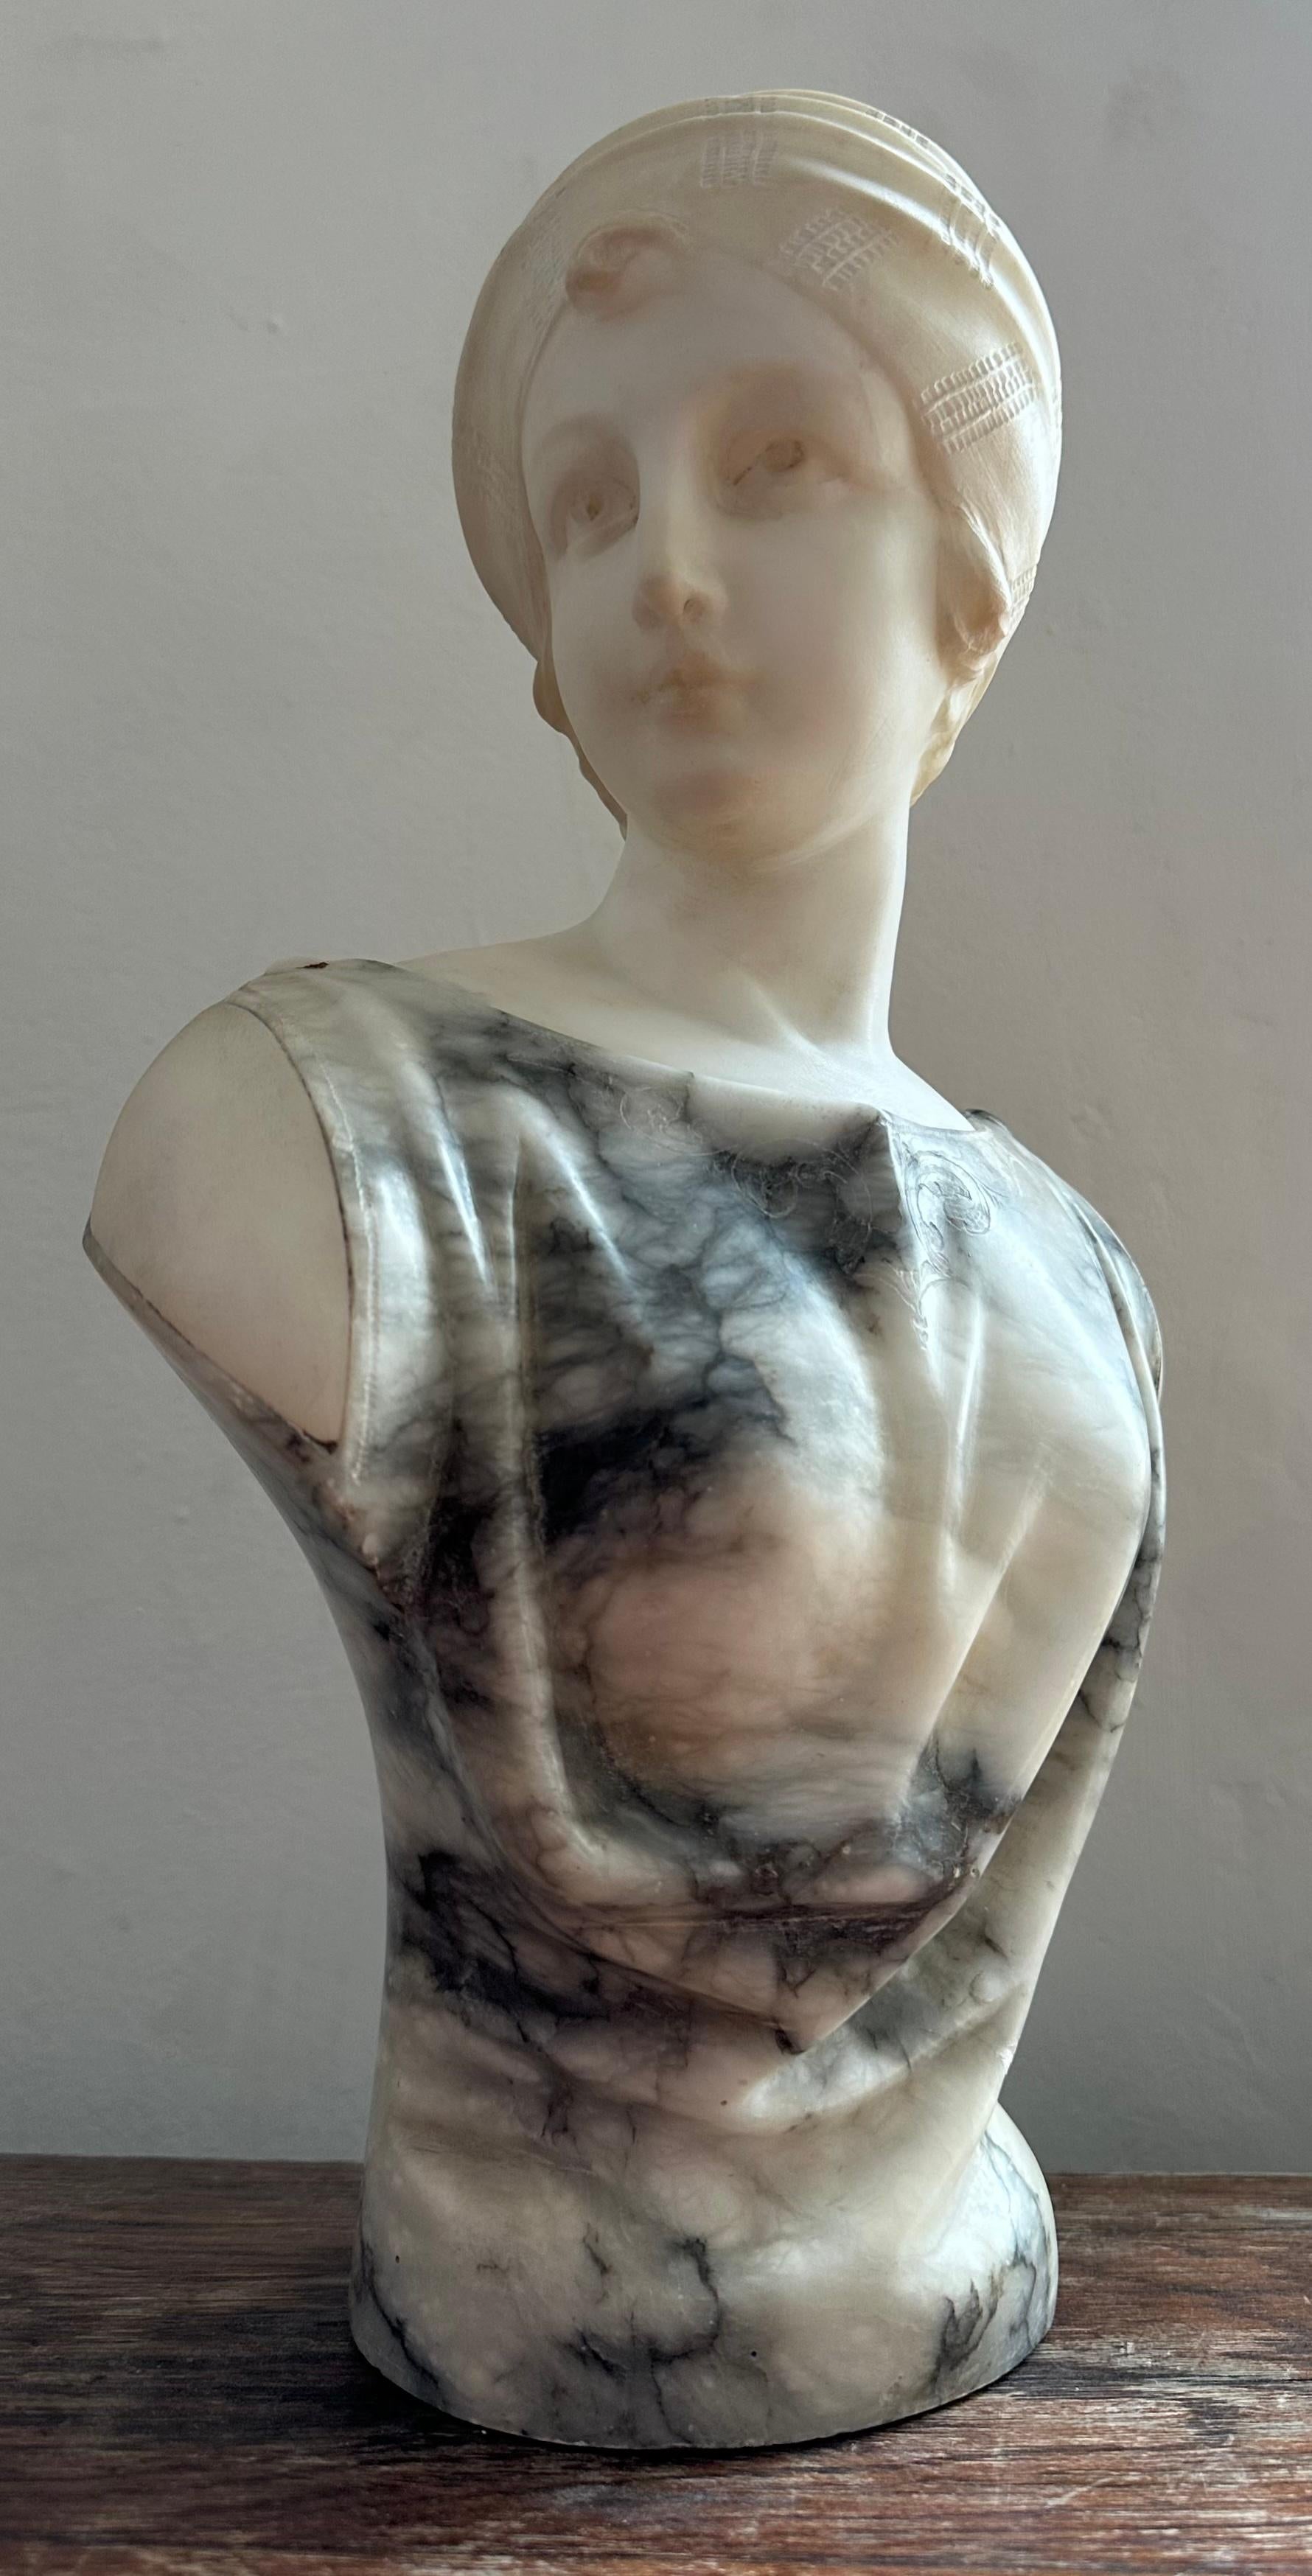 Circa. 1890 Buste en marbre italien d'une élégante dame par Guglielmo Pugi.  Buste en marbre magnifiquement sculpté, représentant une femme portant un turban ou une coiffe minutieusement sculptée, regardant vers sa droite. La dame porte une robe